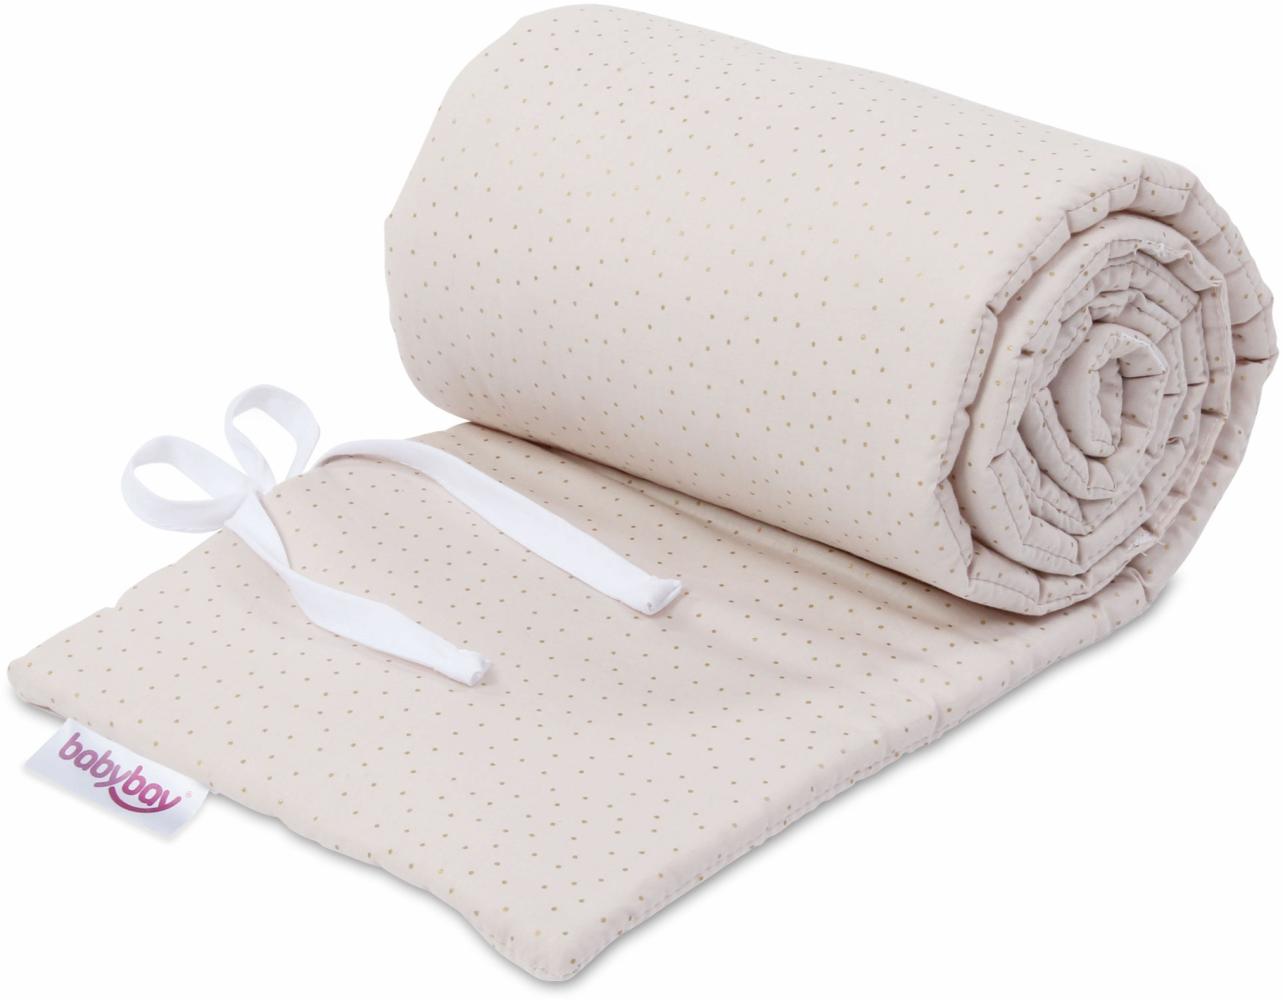 babybay Nestchen Organic Cotton Royal passend für Modell Maxi, Boxspring, Comfort und Comfort Plus, Bild 1